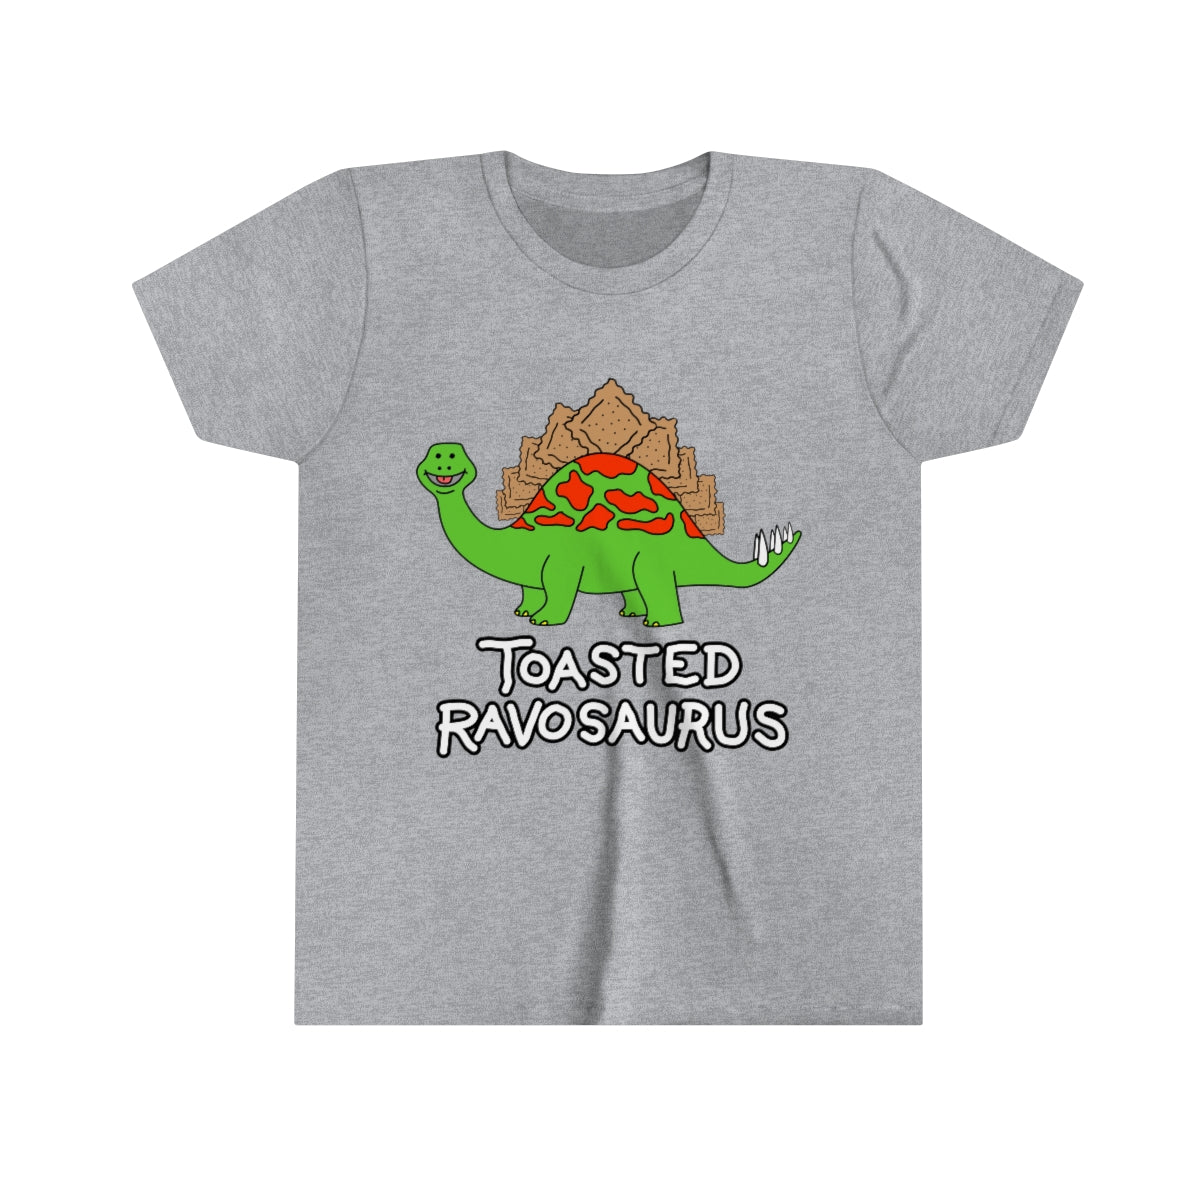 Toasted Ravosaurus KIDS